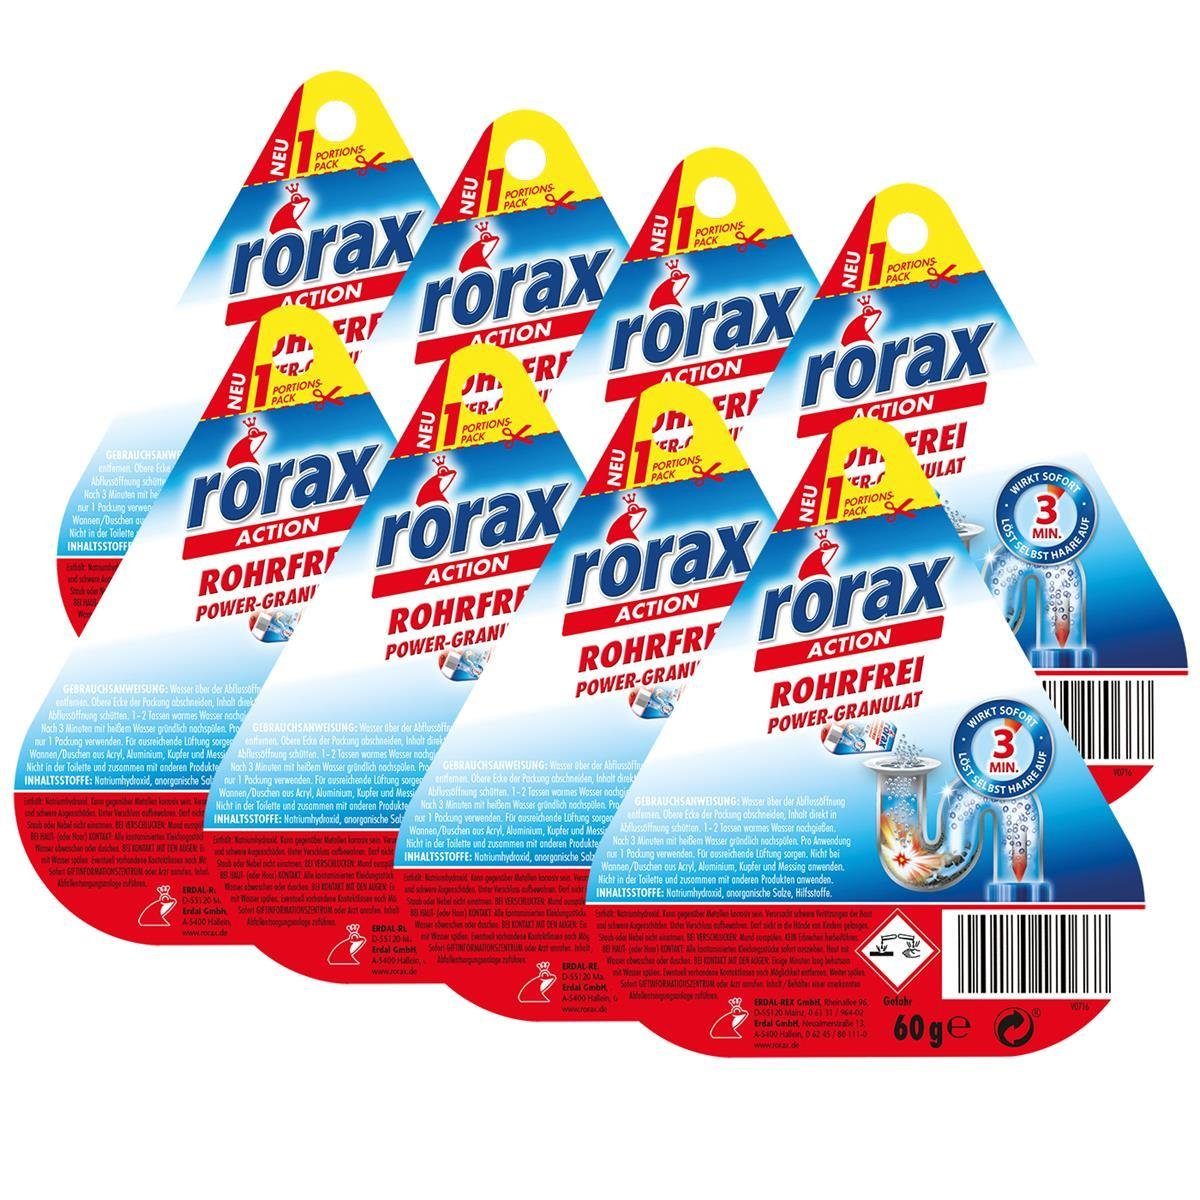 rorax 8x rorax Rohrfrei Power-Granulat Portionspack 60g - Wirkt sofort & lös Rohrreiniger